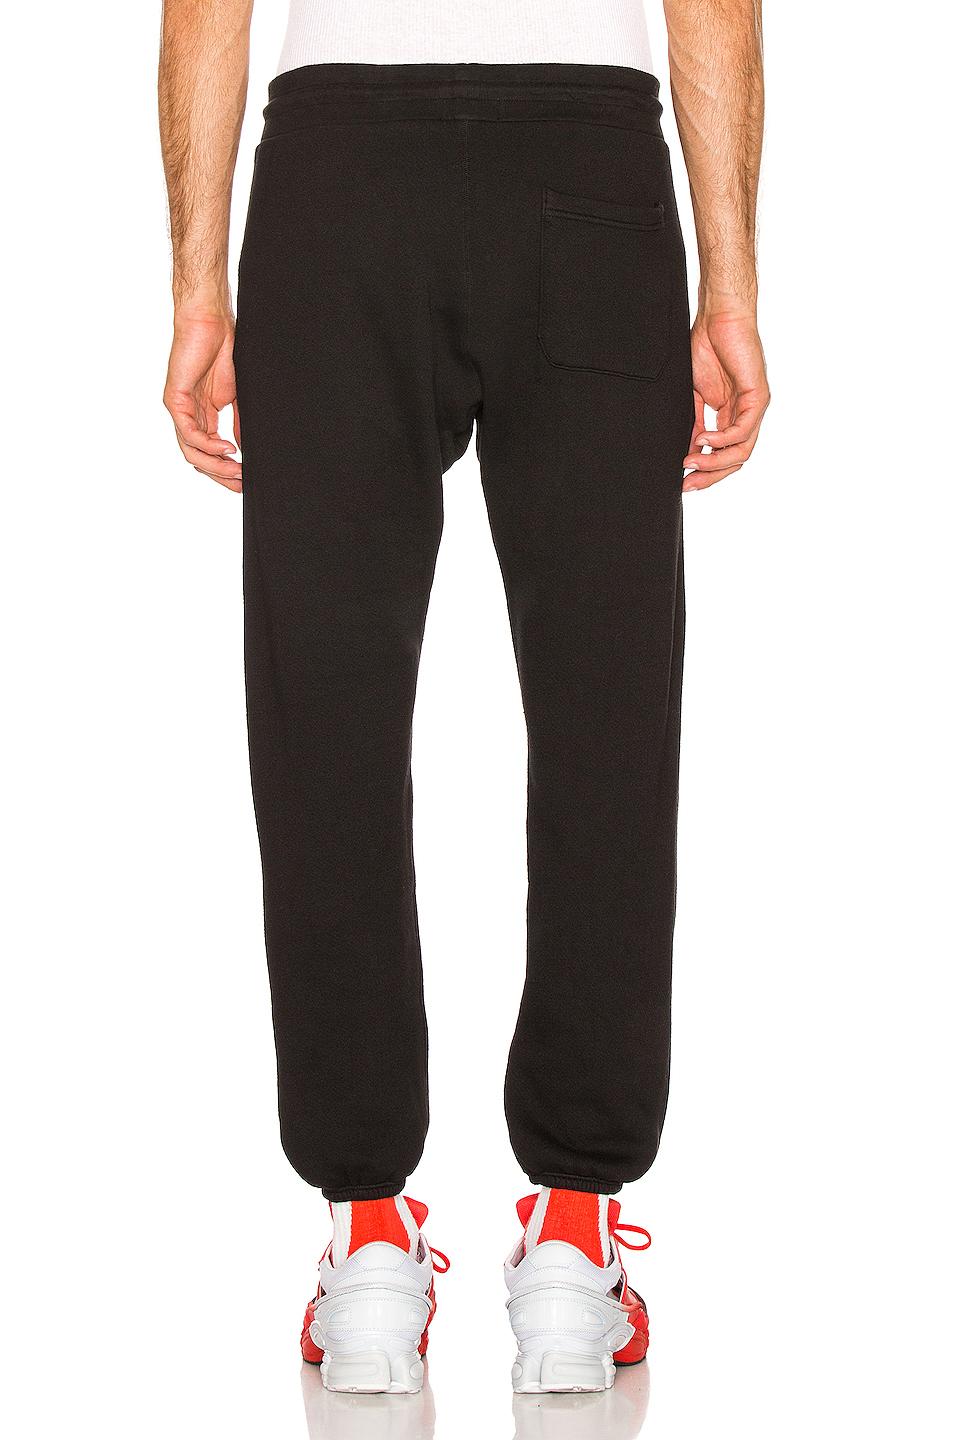 John Elliott Vintage Fleece Sweatpants in Black for Men - Lyst